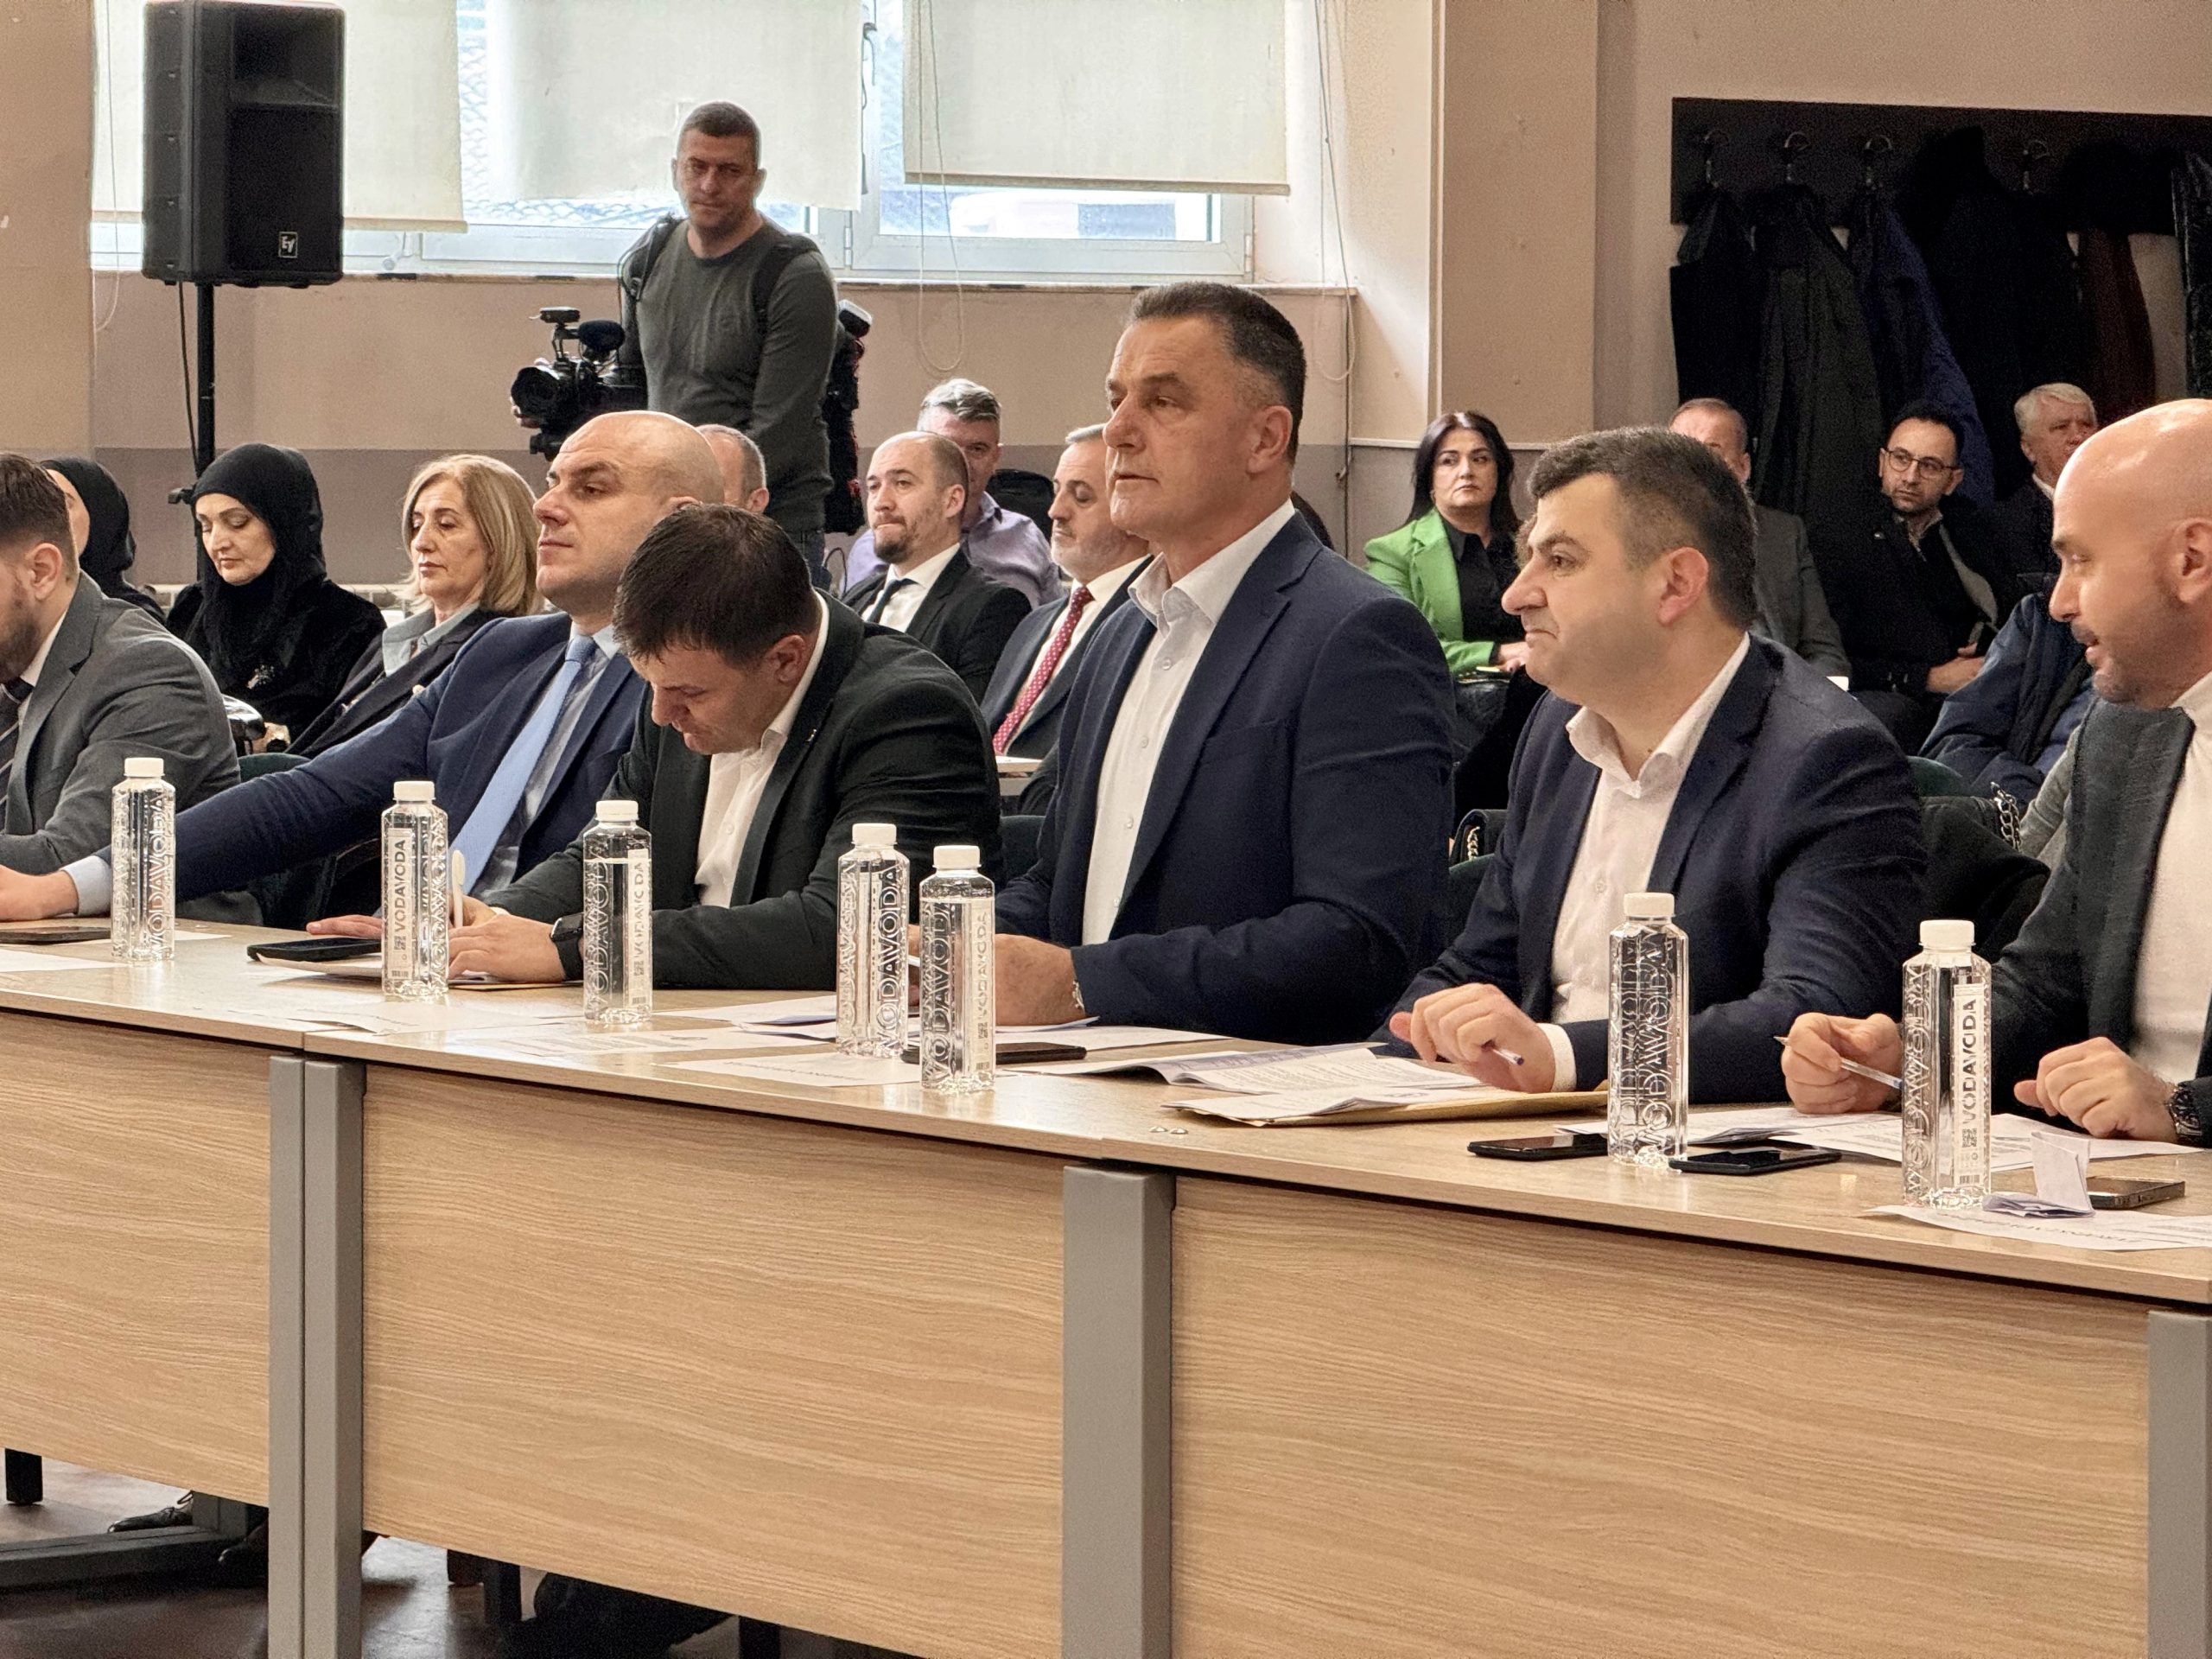 Nihat Biševac ponovo izabran za gradonačelnika Novog Pazara